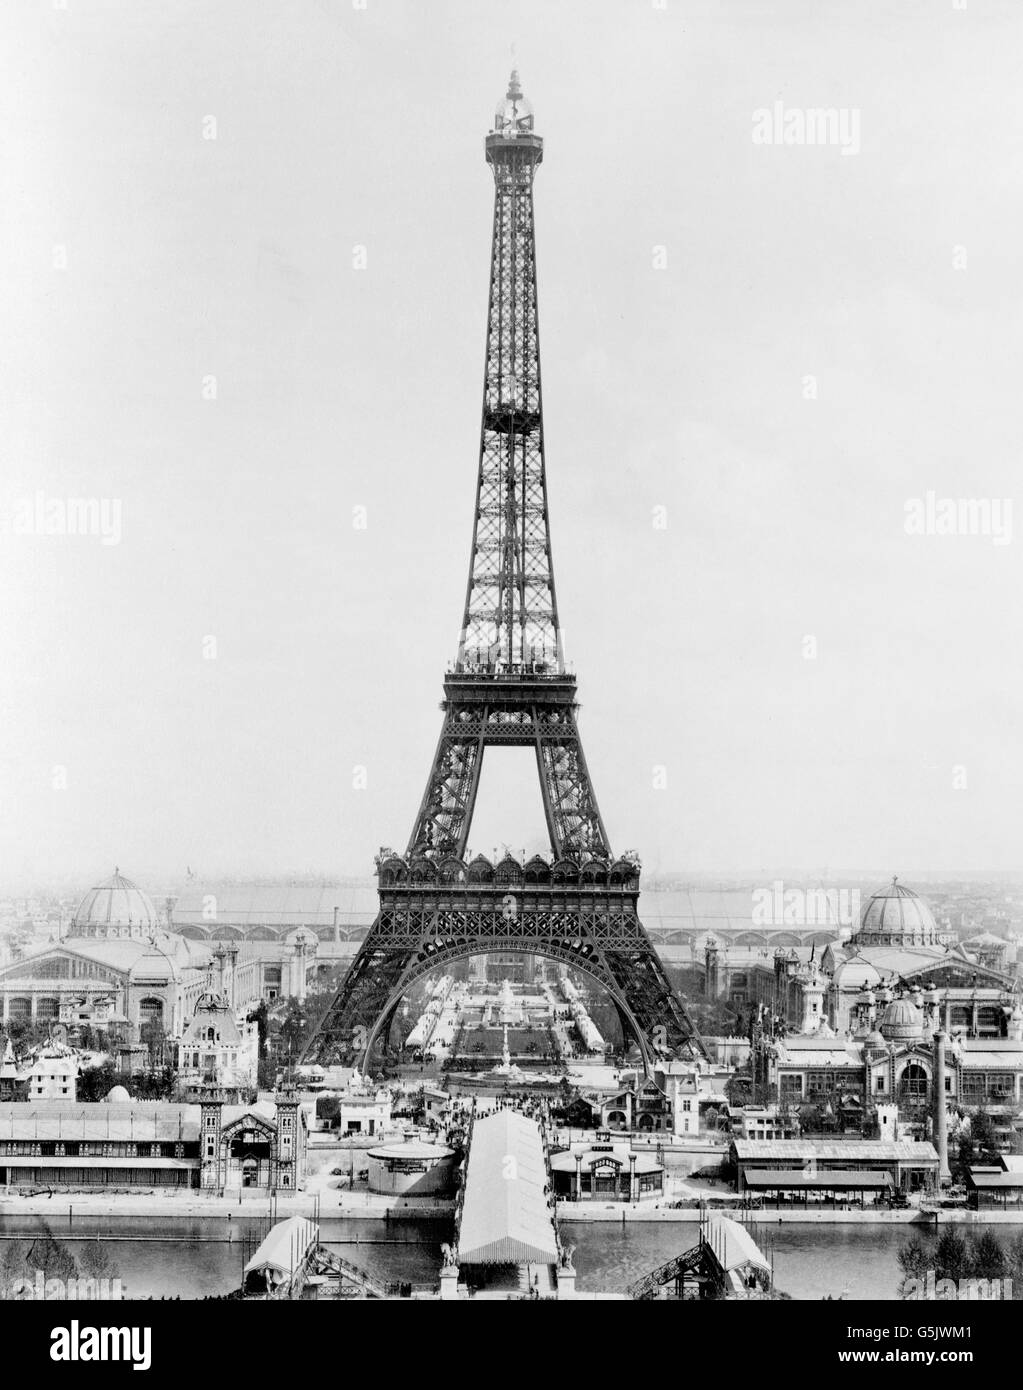 Weltausstellung Paris 1889. Eiffelturm und Ausstellung Gebäude auf dem Champ de Mars von Troacadero, Weltausstellung, 1889 gesehen. Der Eiffelturm wurde gebaut, um als der Eingang zu dieser Weltausstellung dienen. Stockfoto